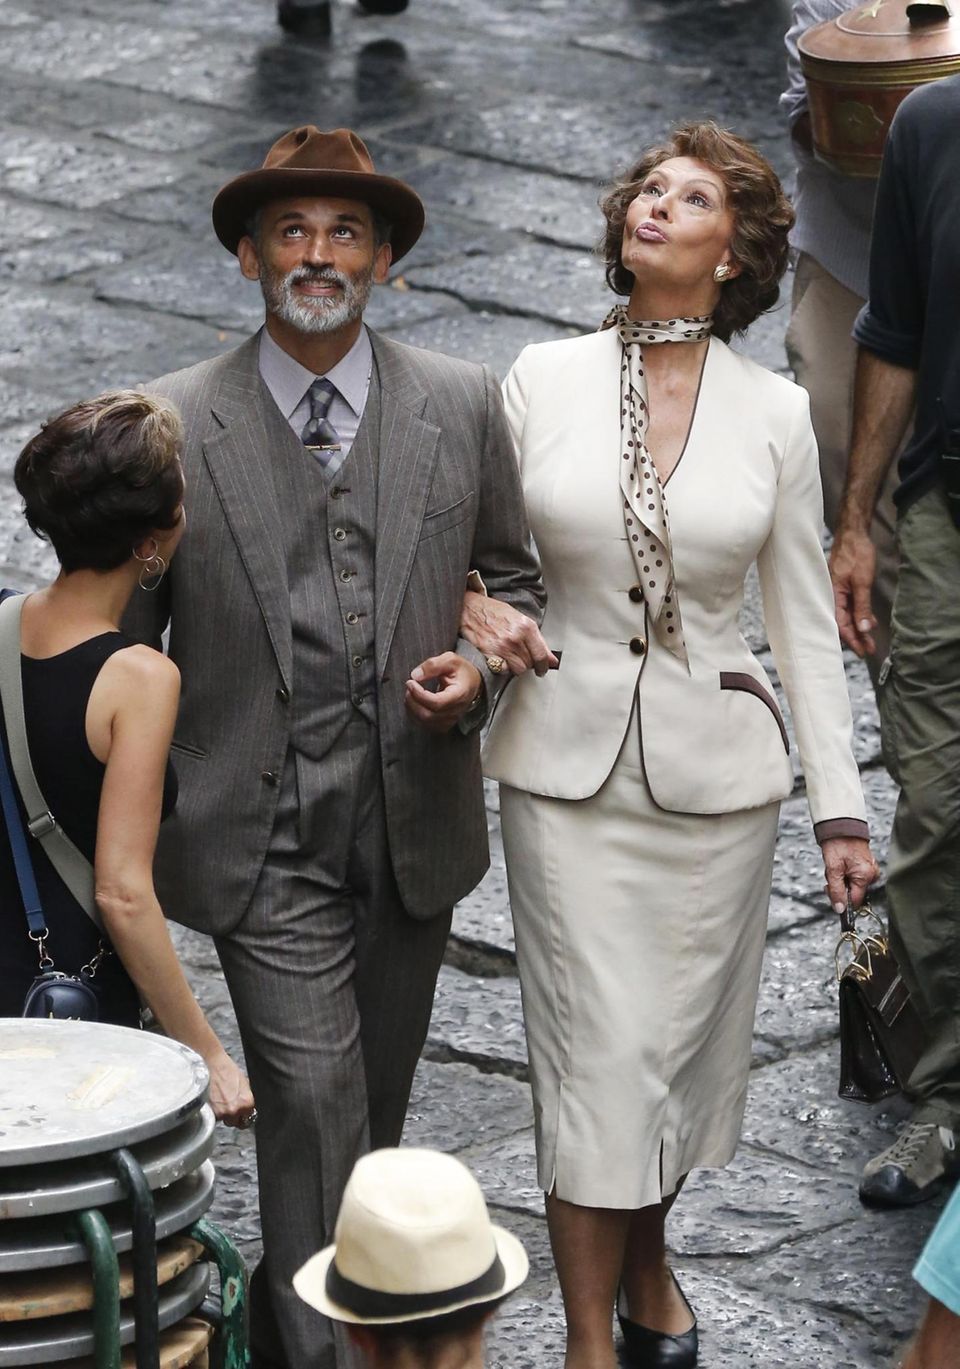 8. Juli 2013: Enrico Loverso und Sophia Loren drehen eine Szene für den Film "La Voce Umana" in Neapel.